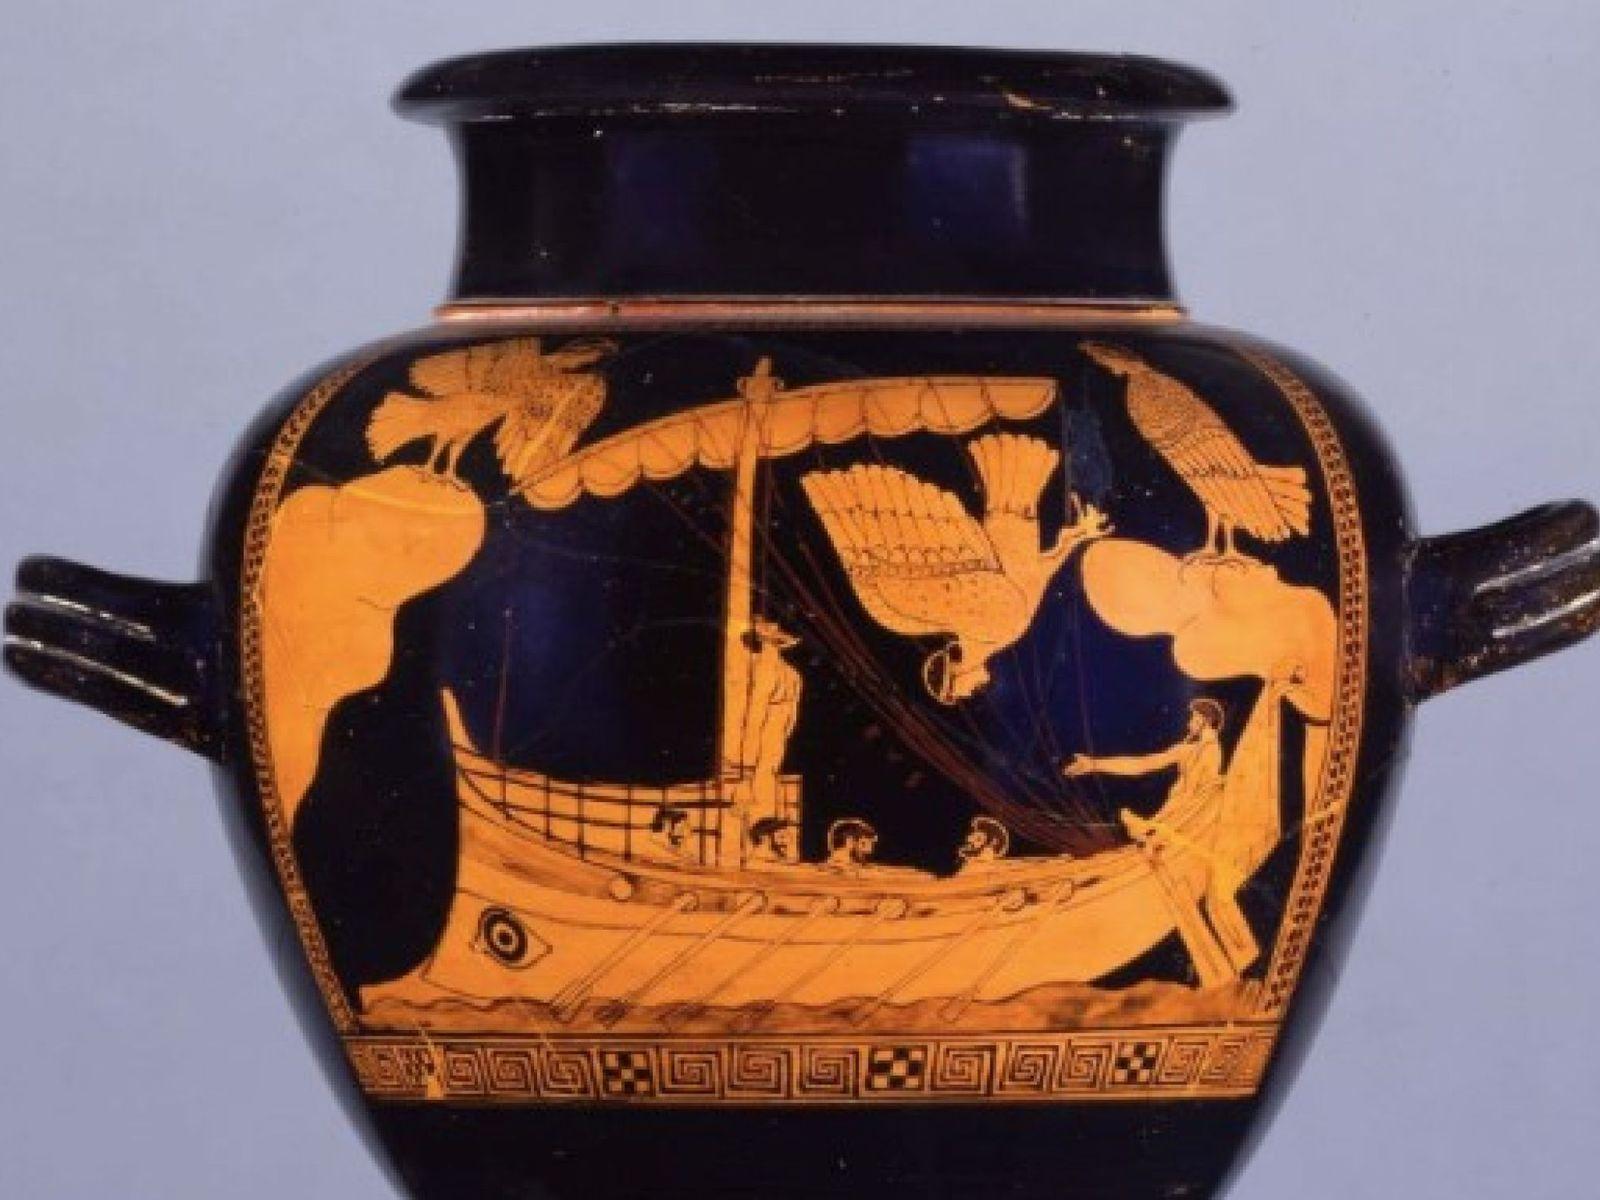 Изображение на аттической вазе «Одиссей у острова сирен» из коллекции Британского музея. V век до н.э..jpg